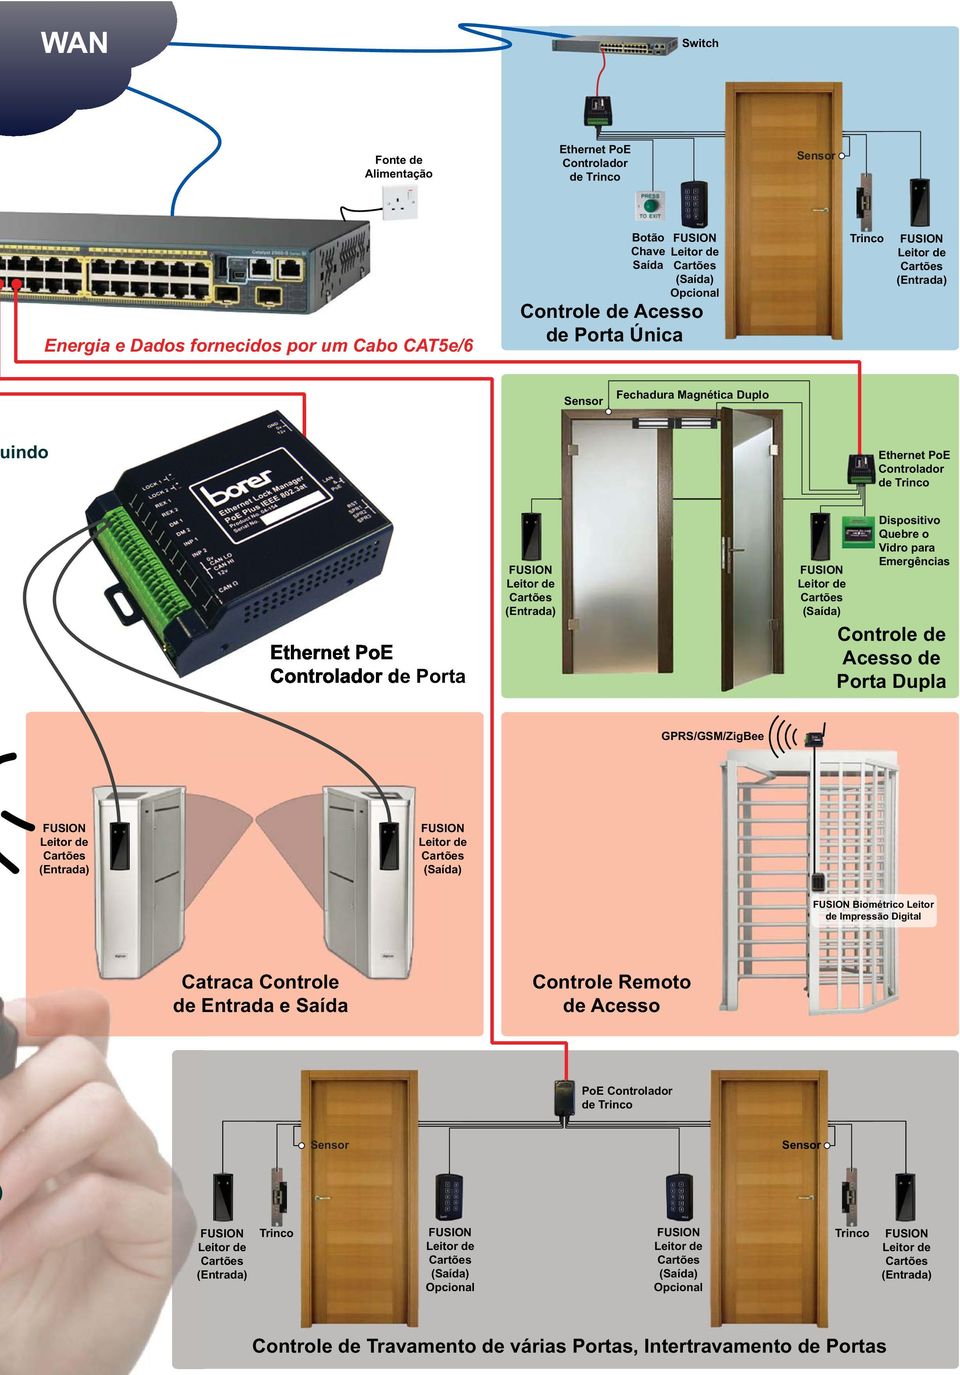 o Vidro para Emergências Controle de Acesso de Porta Dupla GPRS/GSM/ZigBee Biométrico Leitor de Impressão Digital Catraca Controle de Entrada e Saída